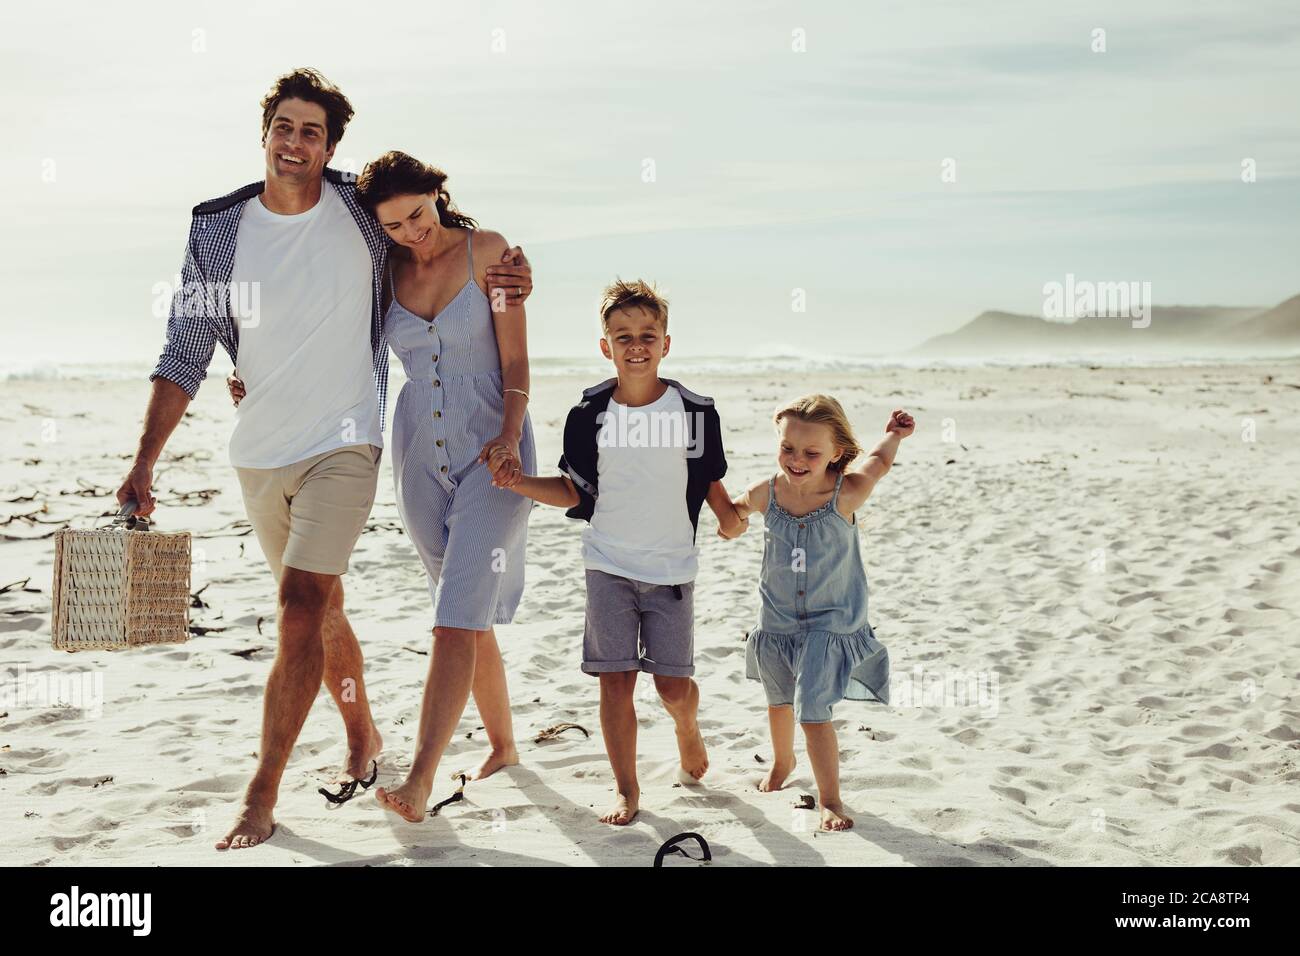 Bella famiglia di quattro in vacanza estiva in spiaggia. Famiglia che cammina insieme sulla spiaggia, con l'uomo che porta un cestino da picnic. Foto Stock